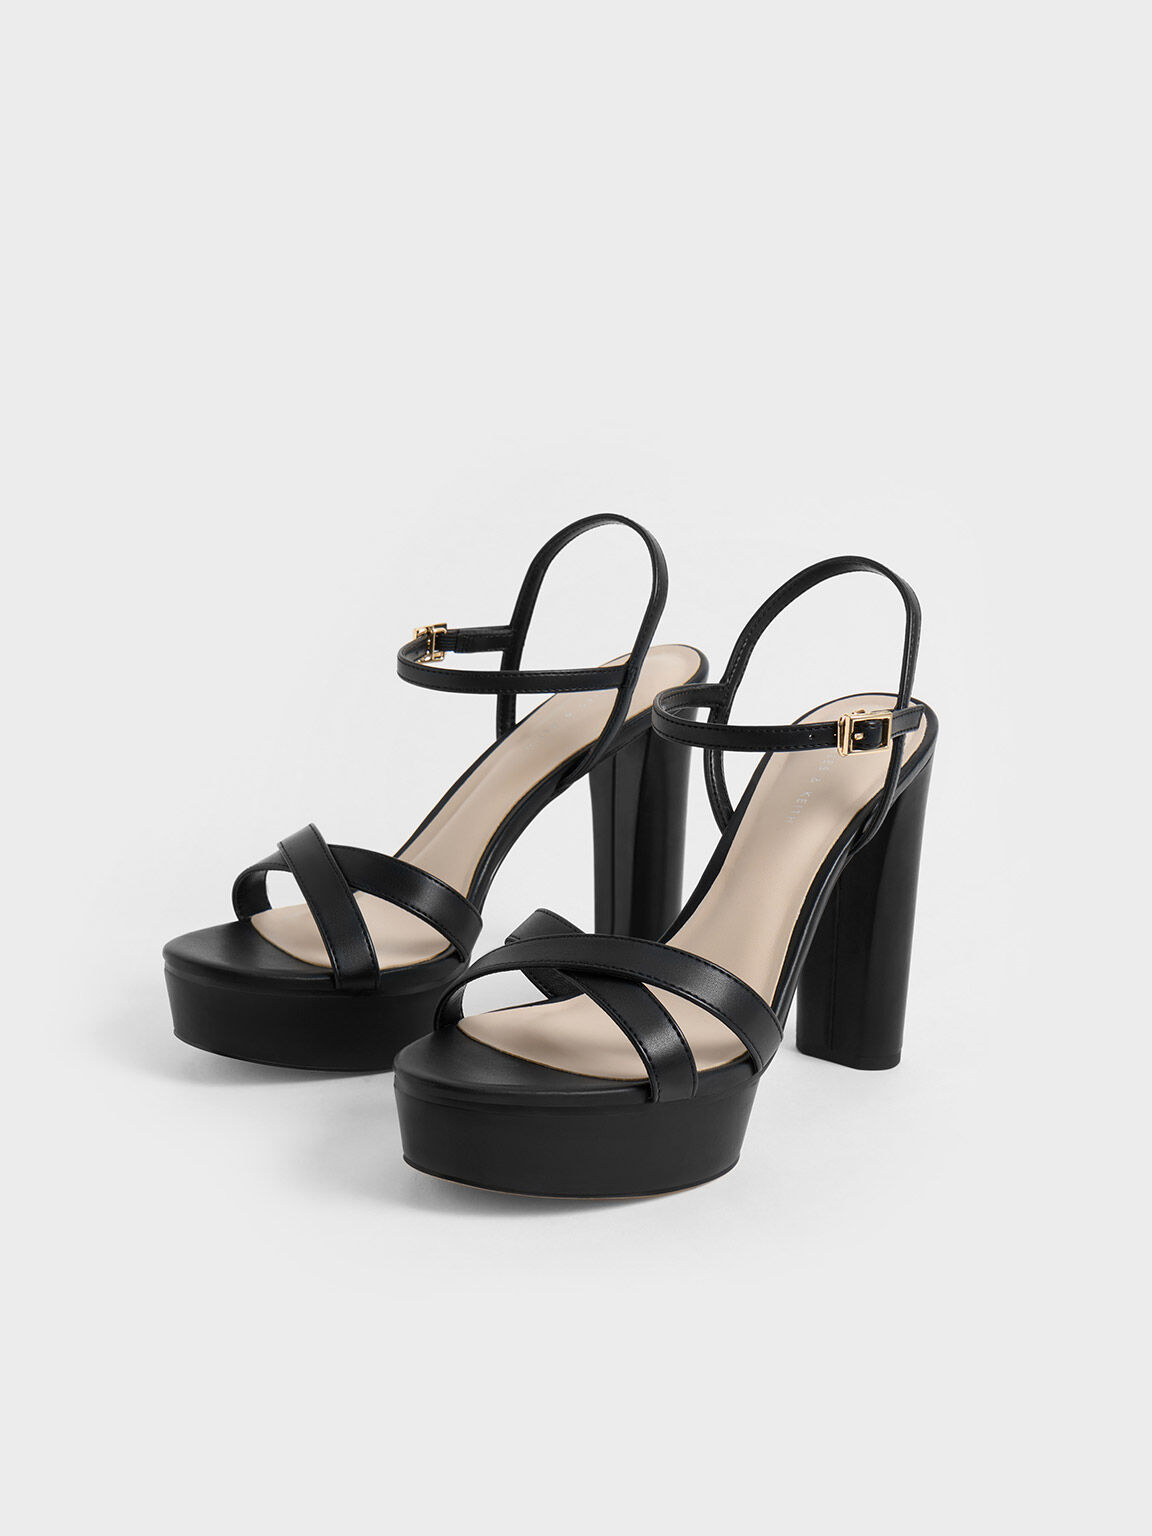 Crossover Platform Sandals, Black, hi-res